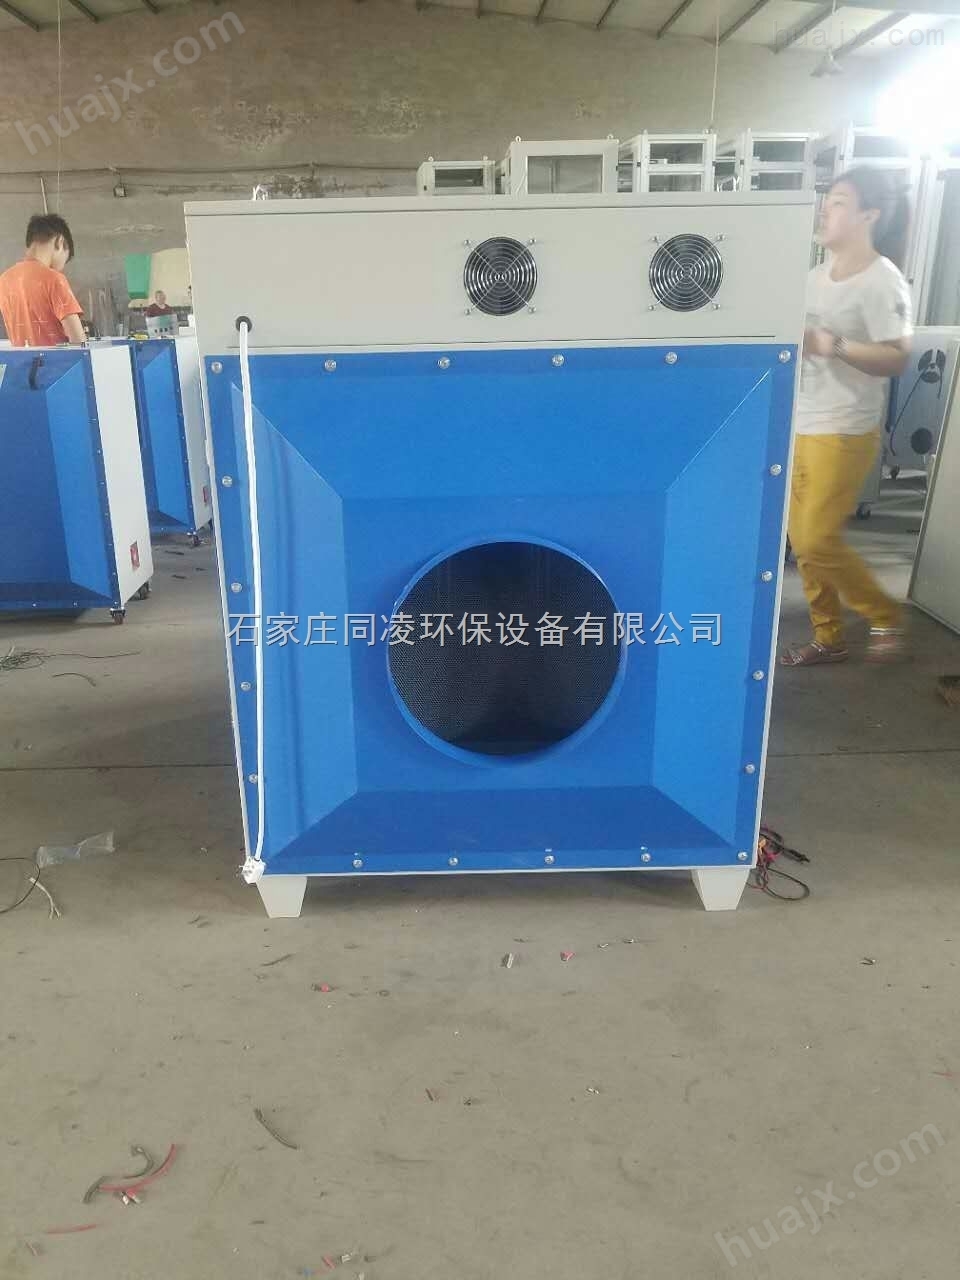 北京光氧催化废气净化器